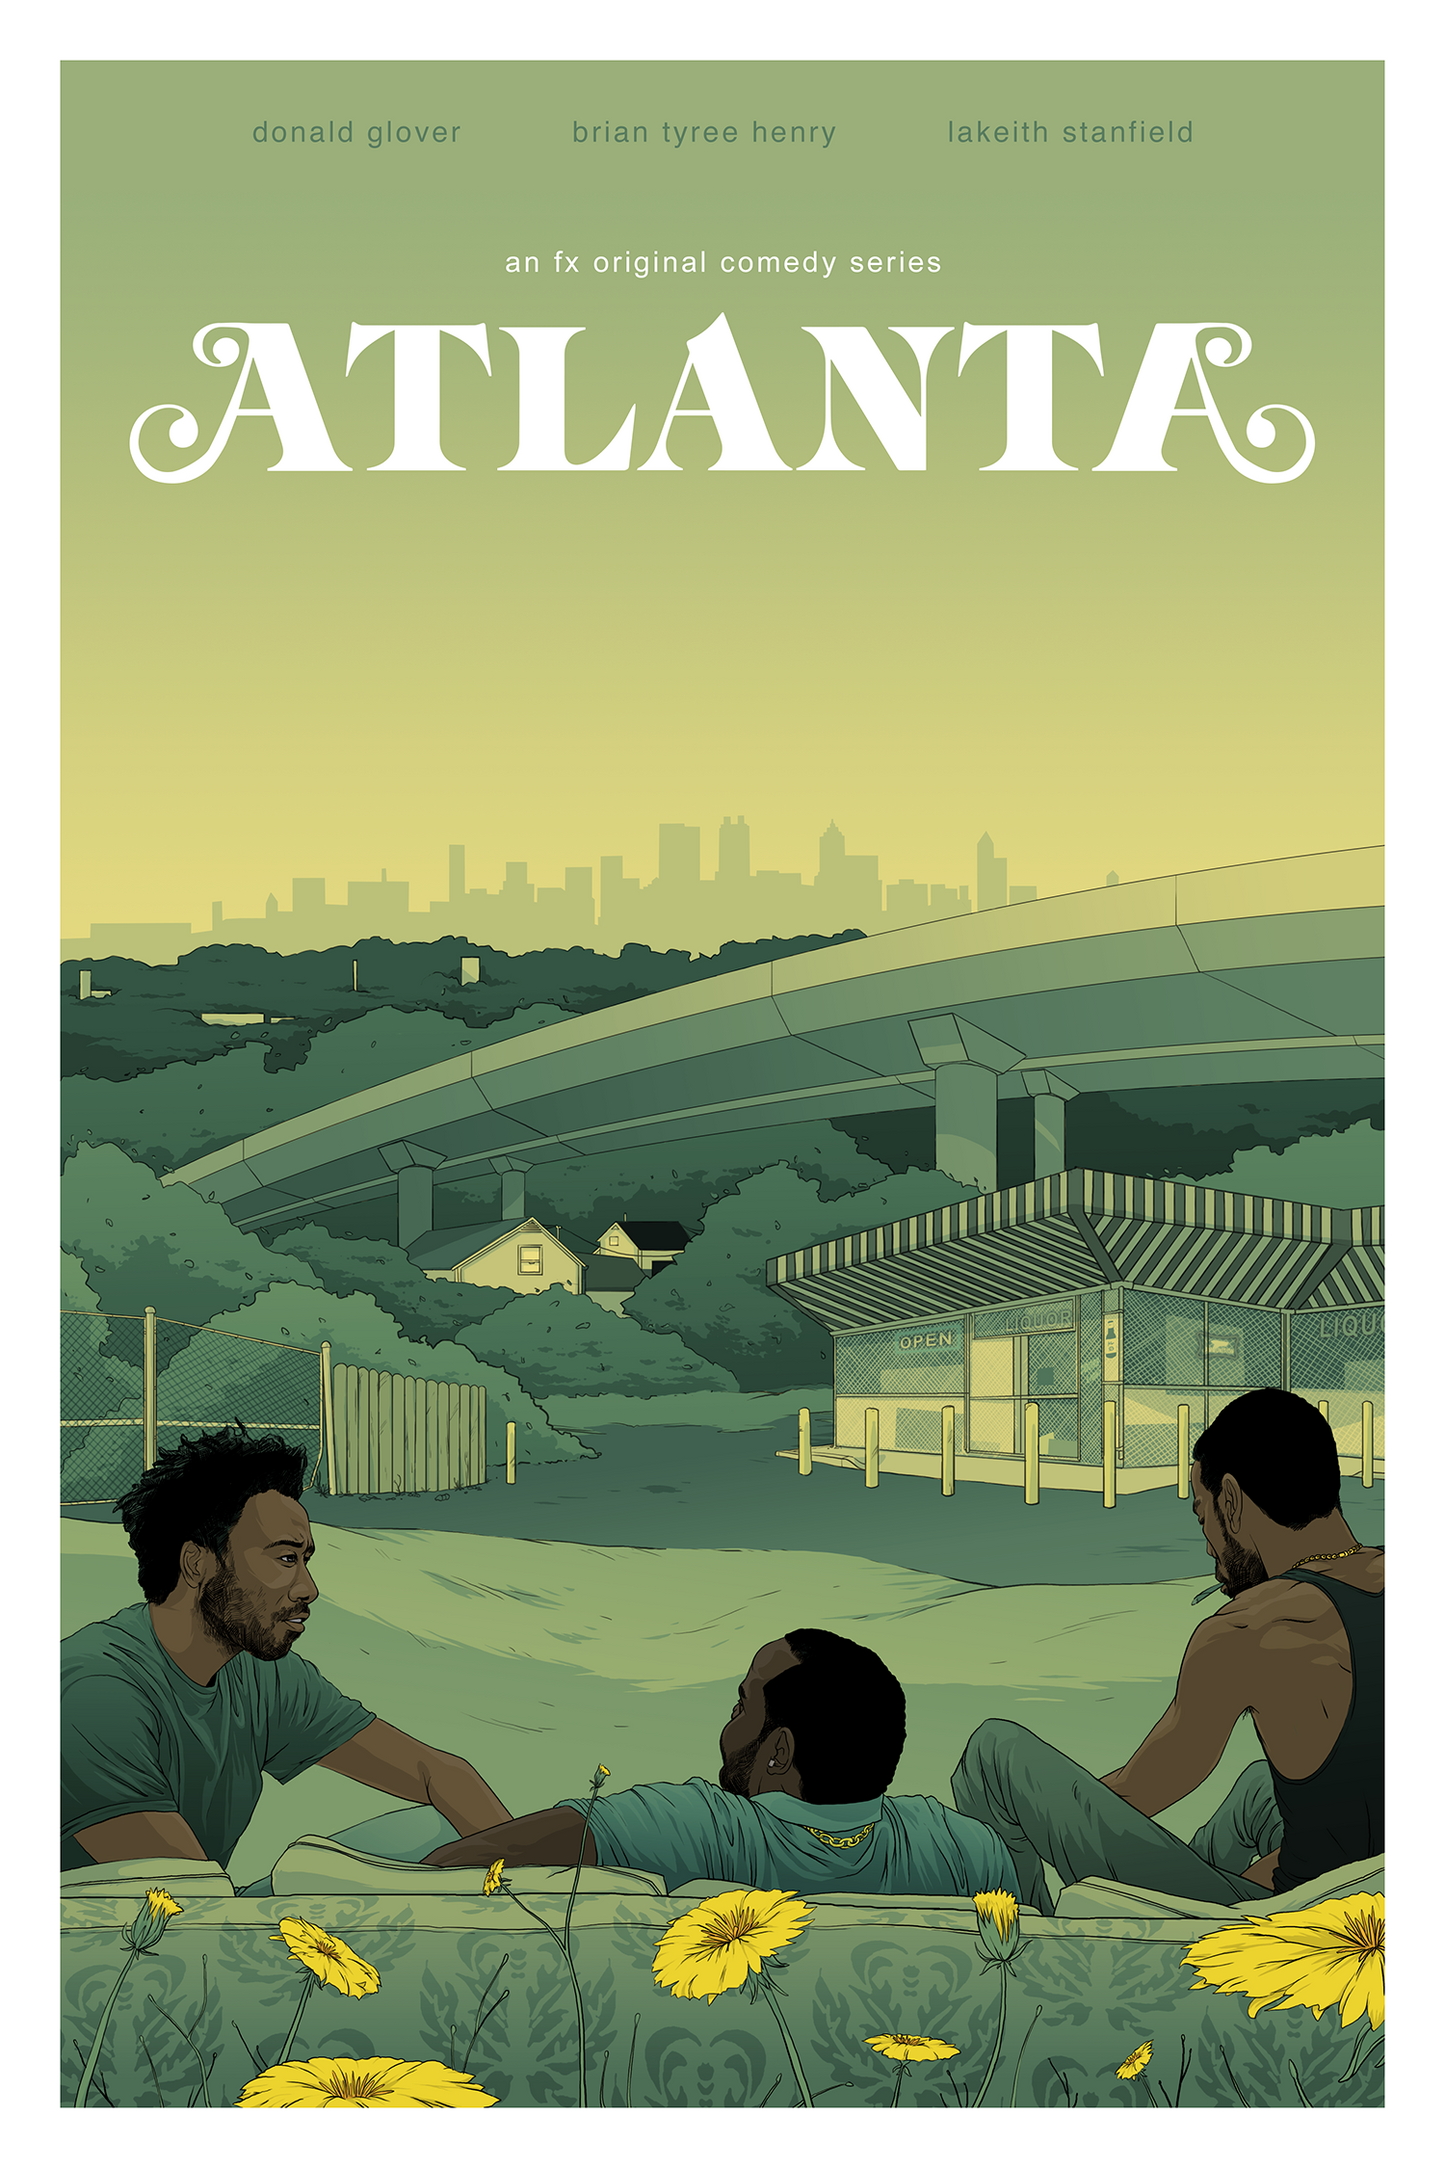 Ryan Burns "Atlanta" Charity Print